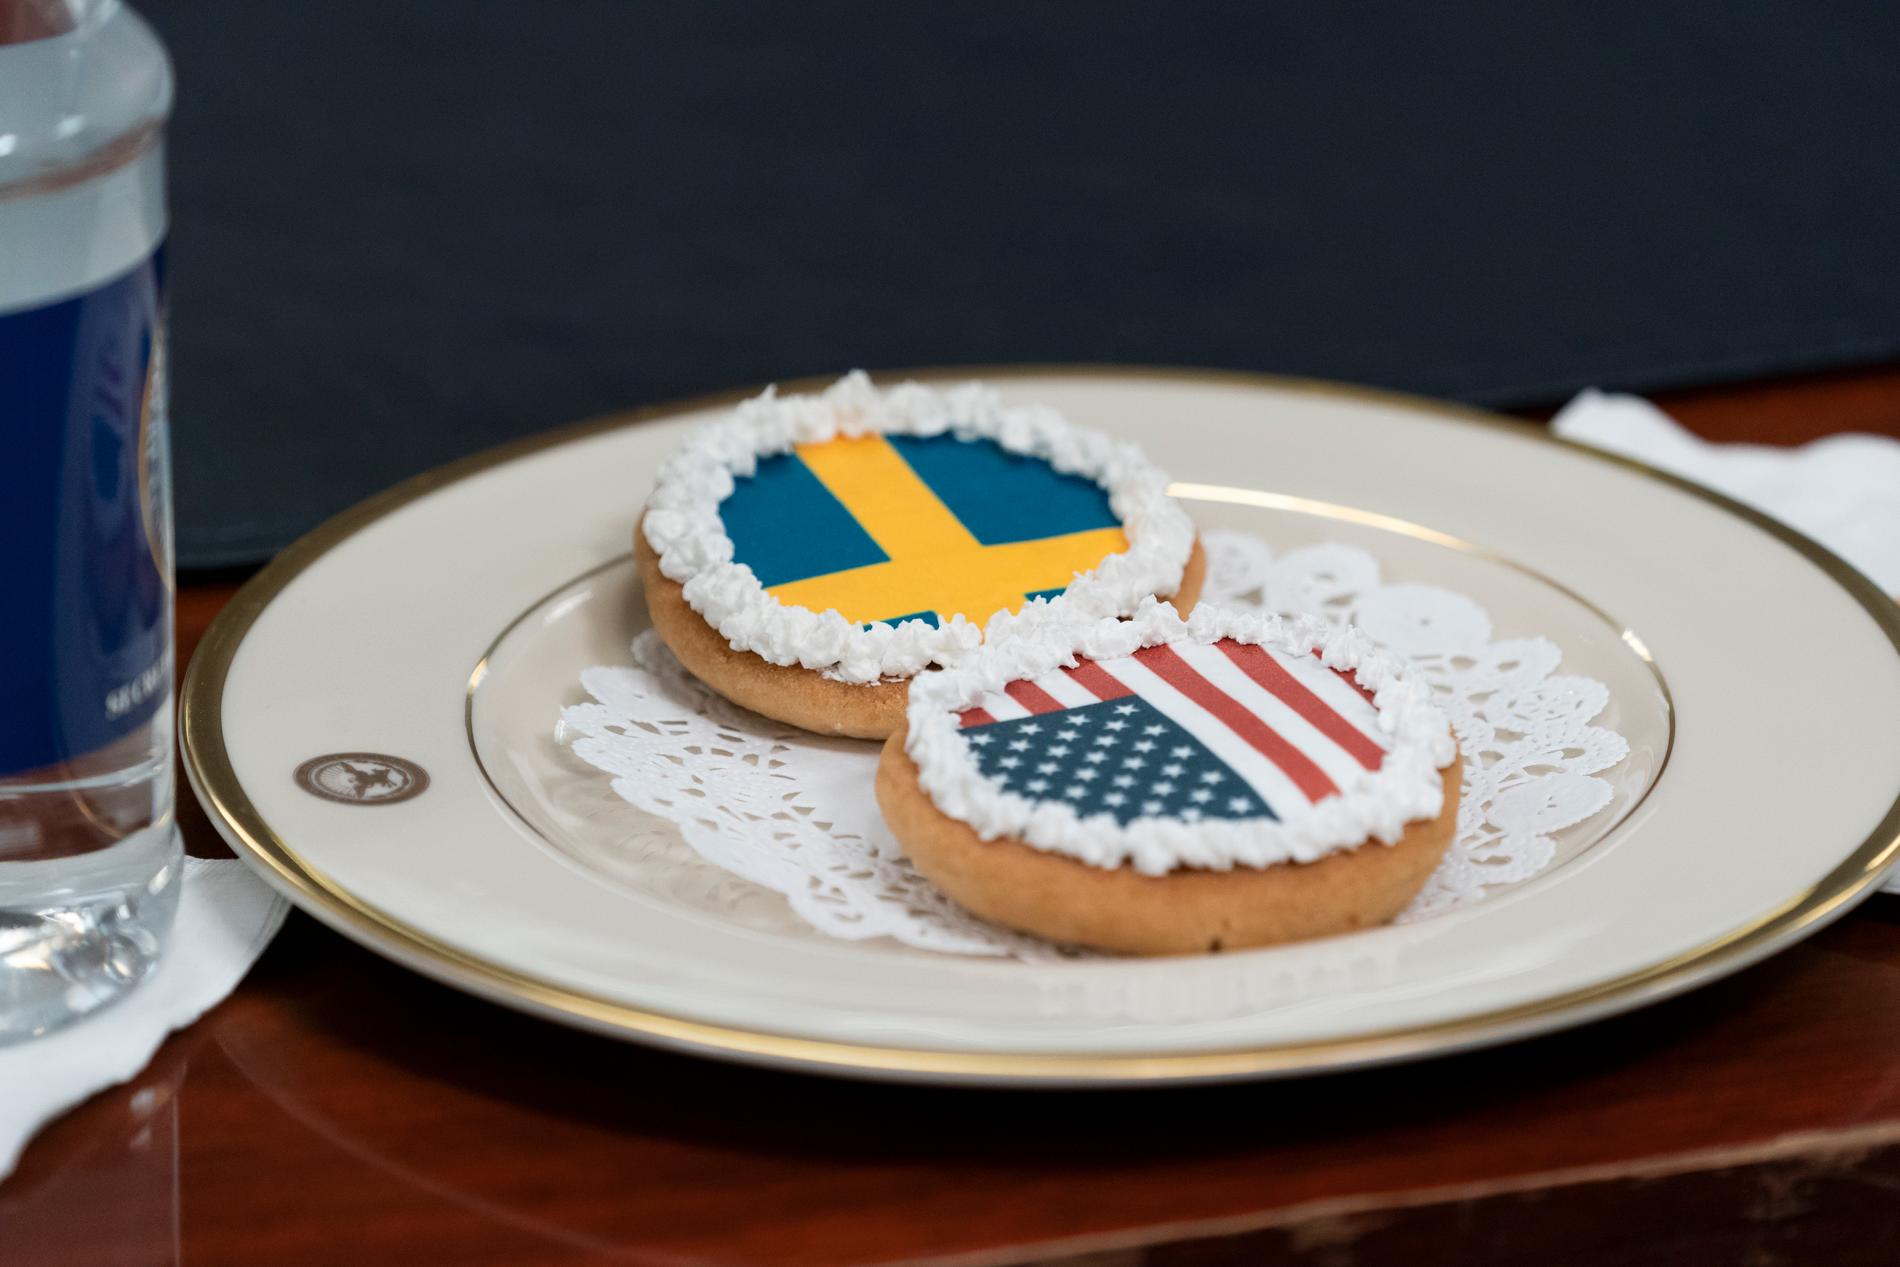 Sveriges och USA:s flaggor avbildade på kakor vid onsdagens möte i Pentagon.